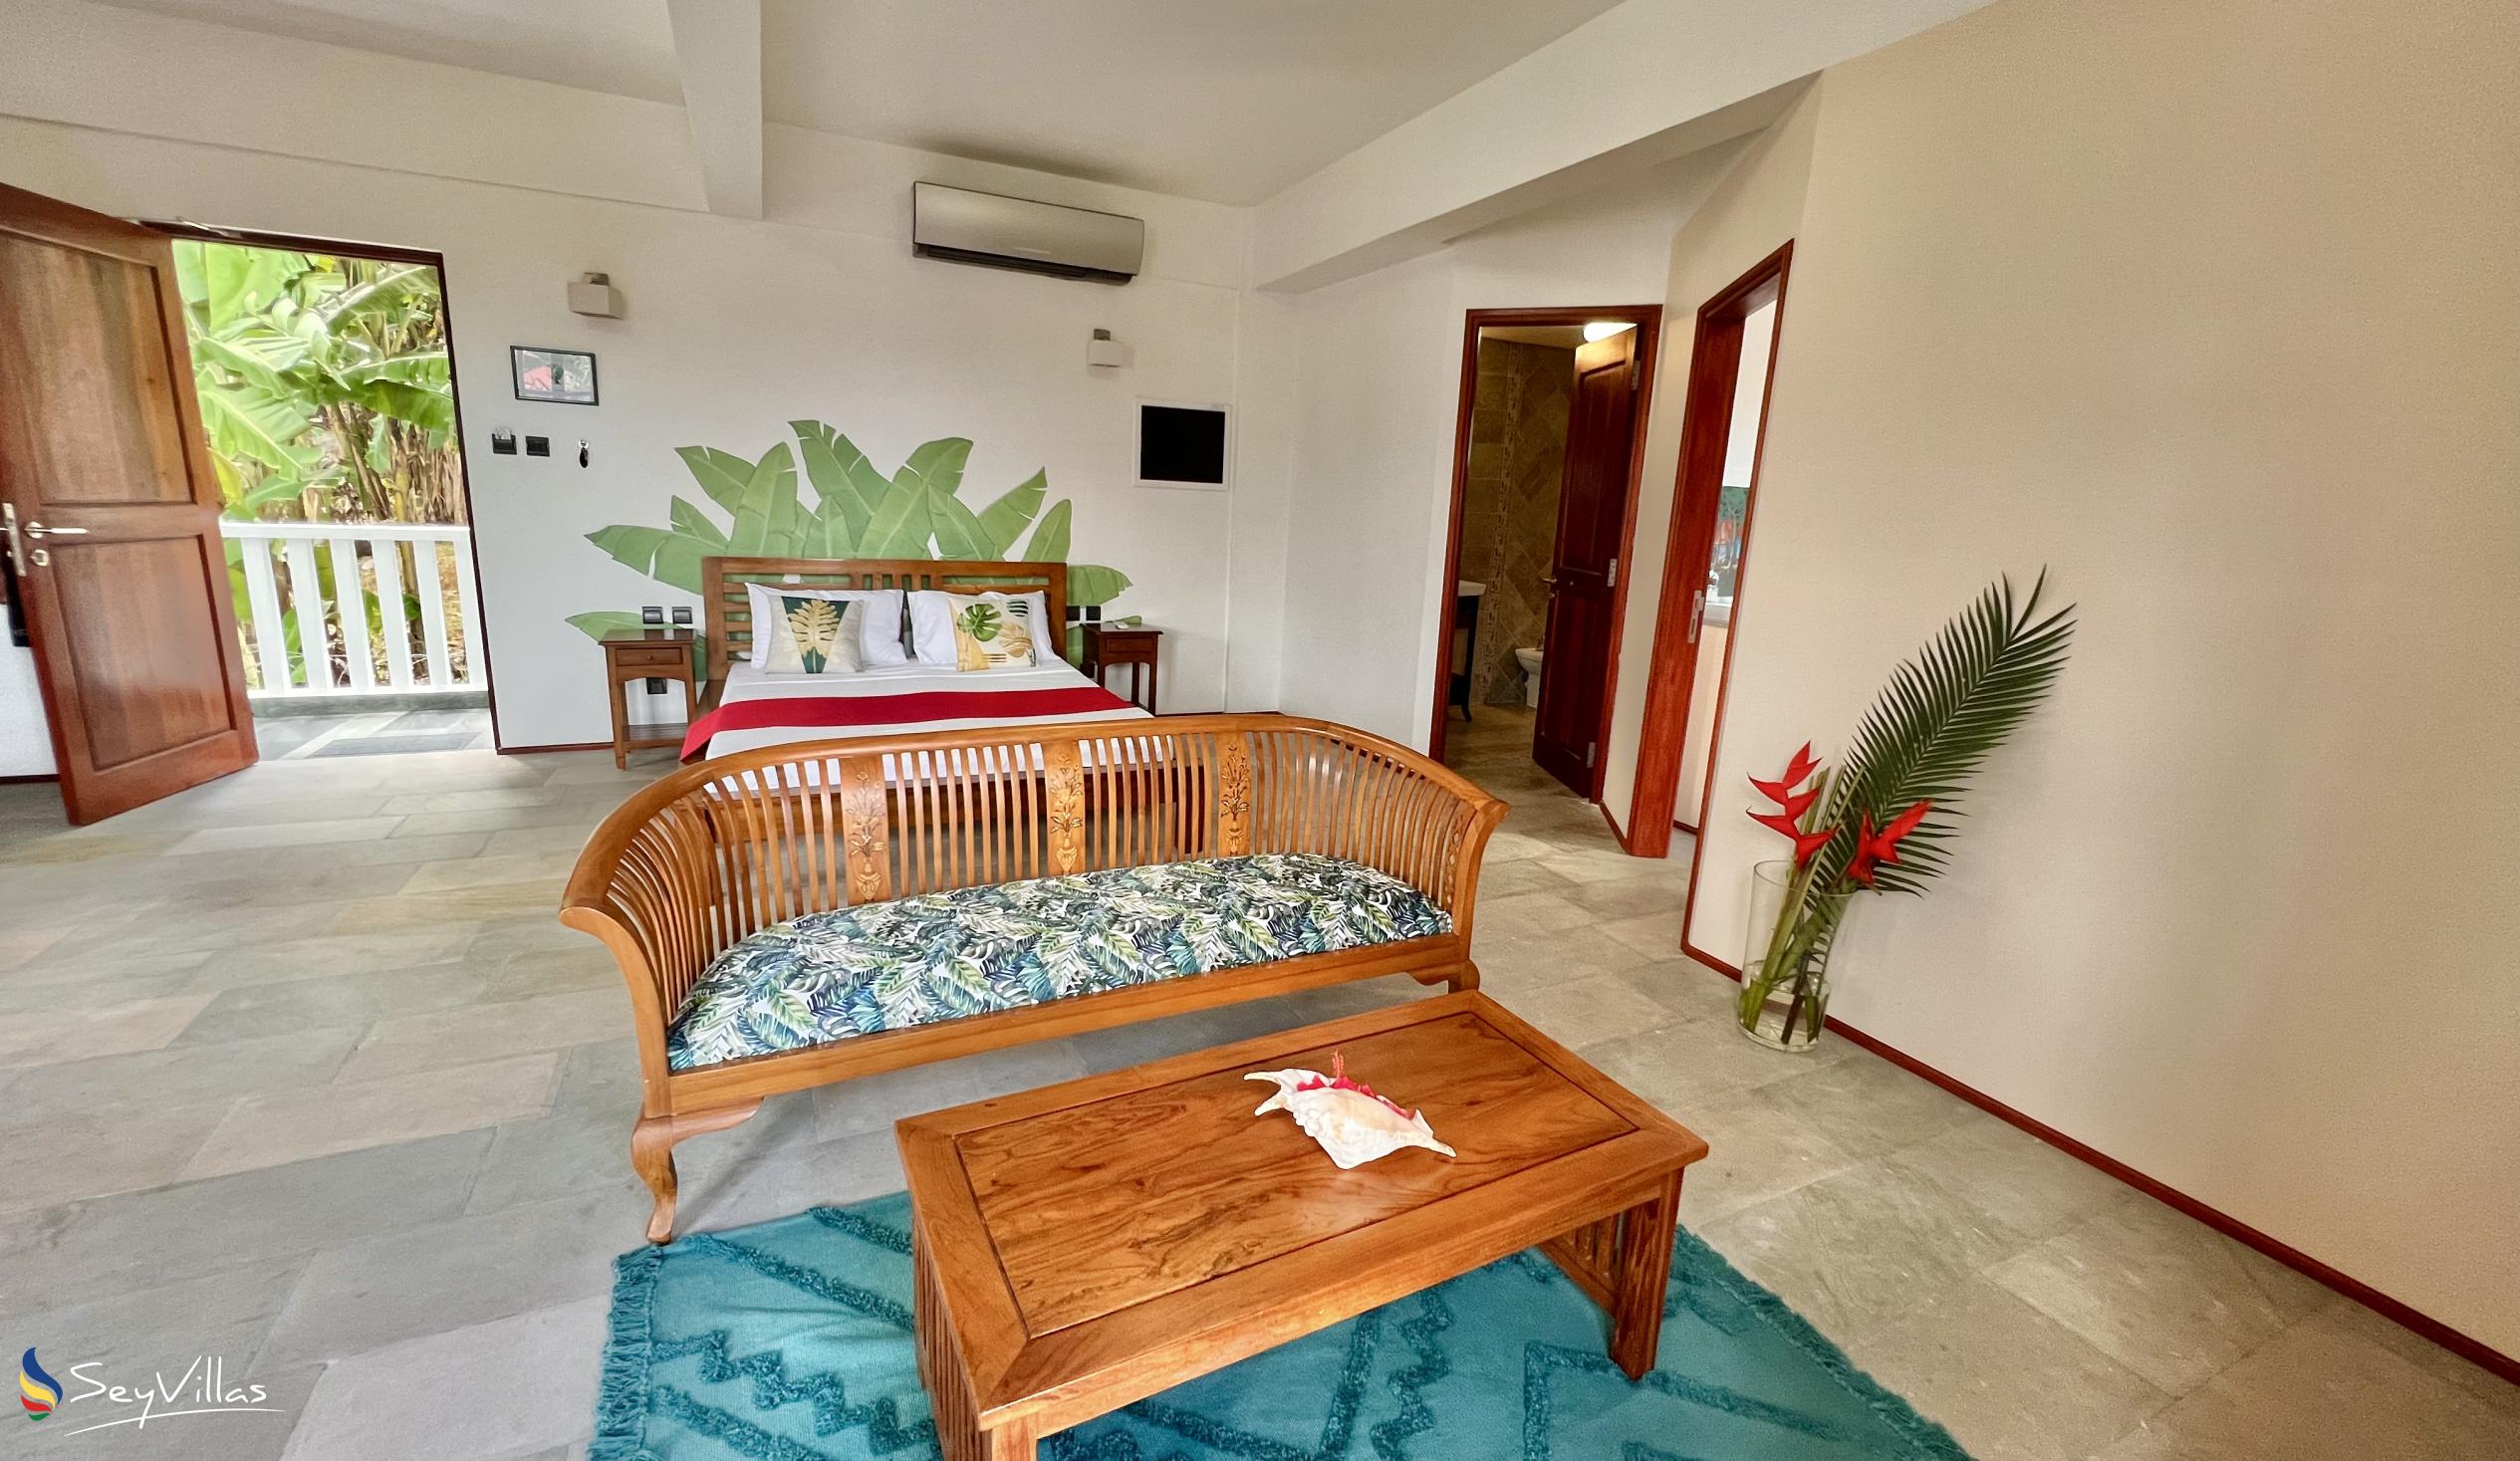 Foto 72: Hilltop Boutique Hotel - Appartement 2 chambres - Mahé (Seychelles)